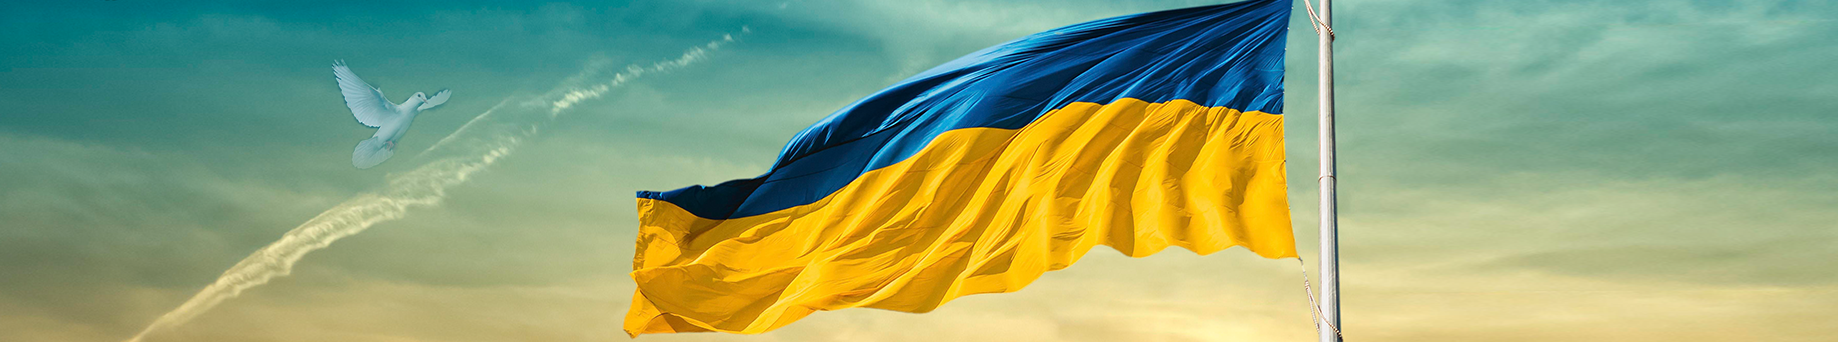 Fahne Ukraine, Himmel mit Taube